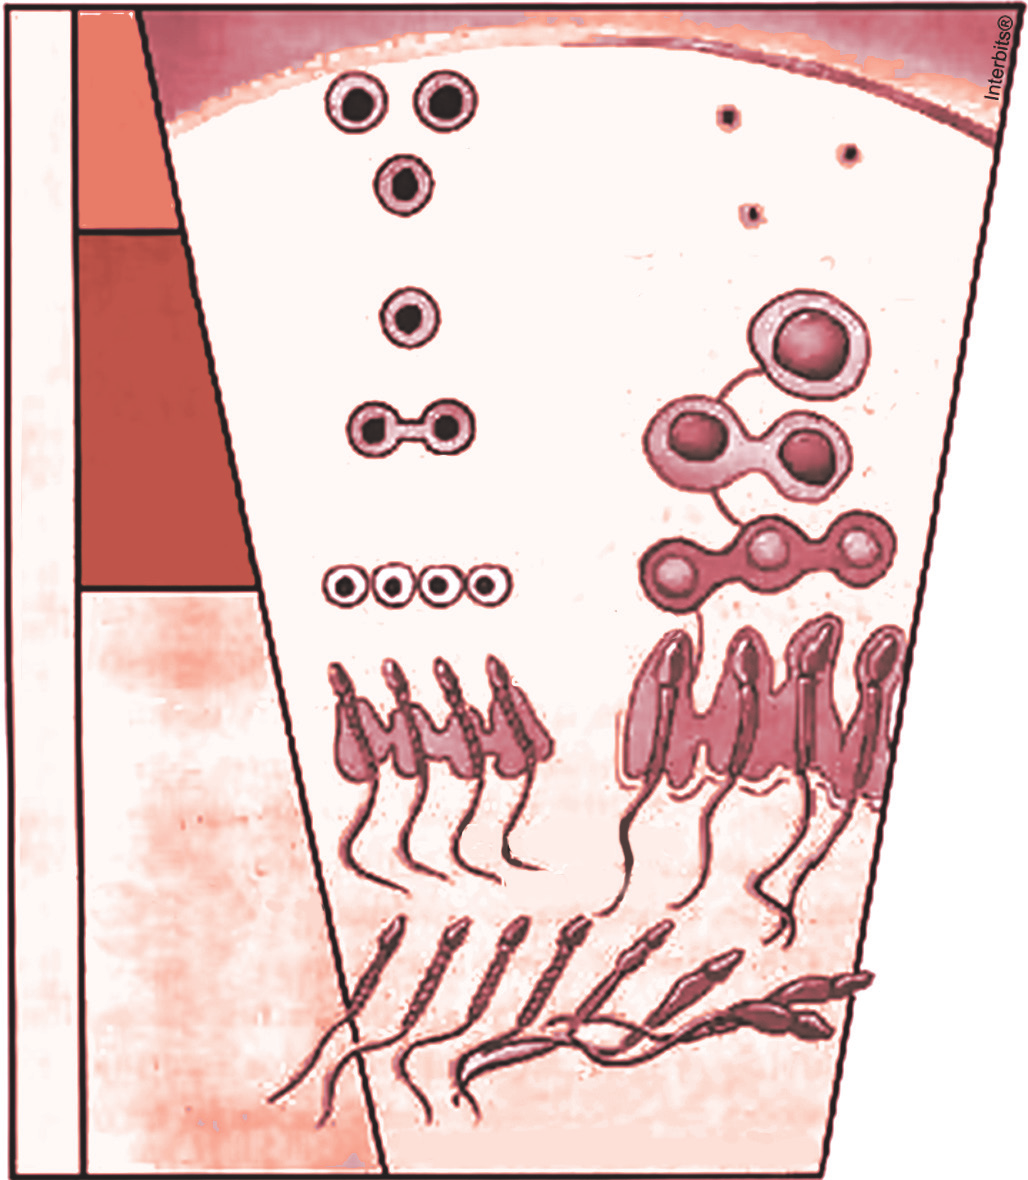 Fixação 3) (UERJ) Observe, na ilustração, os tipos celulares da linhagem germinativa presentes nos túbulos seminíferos.